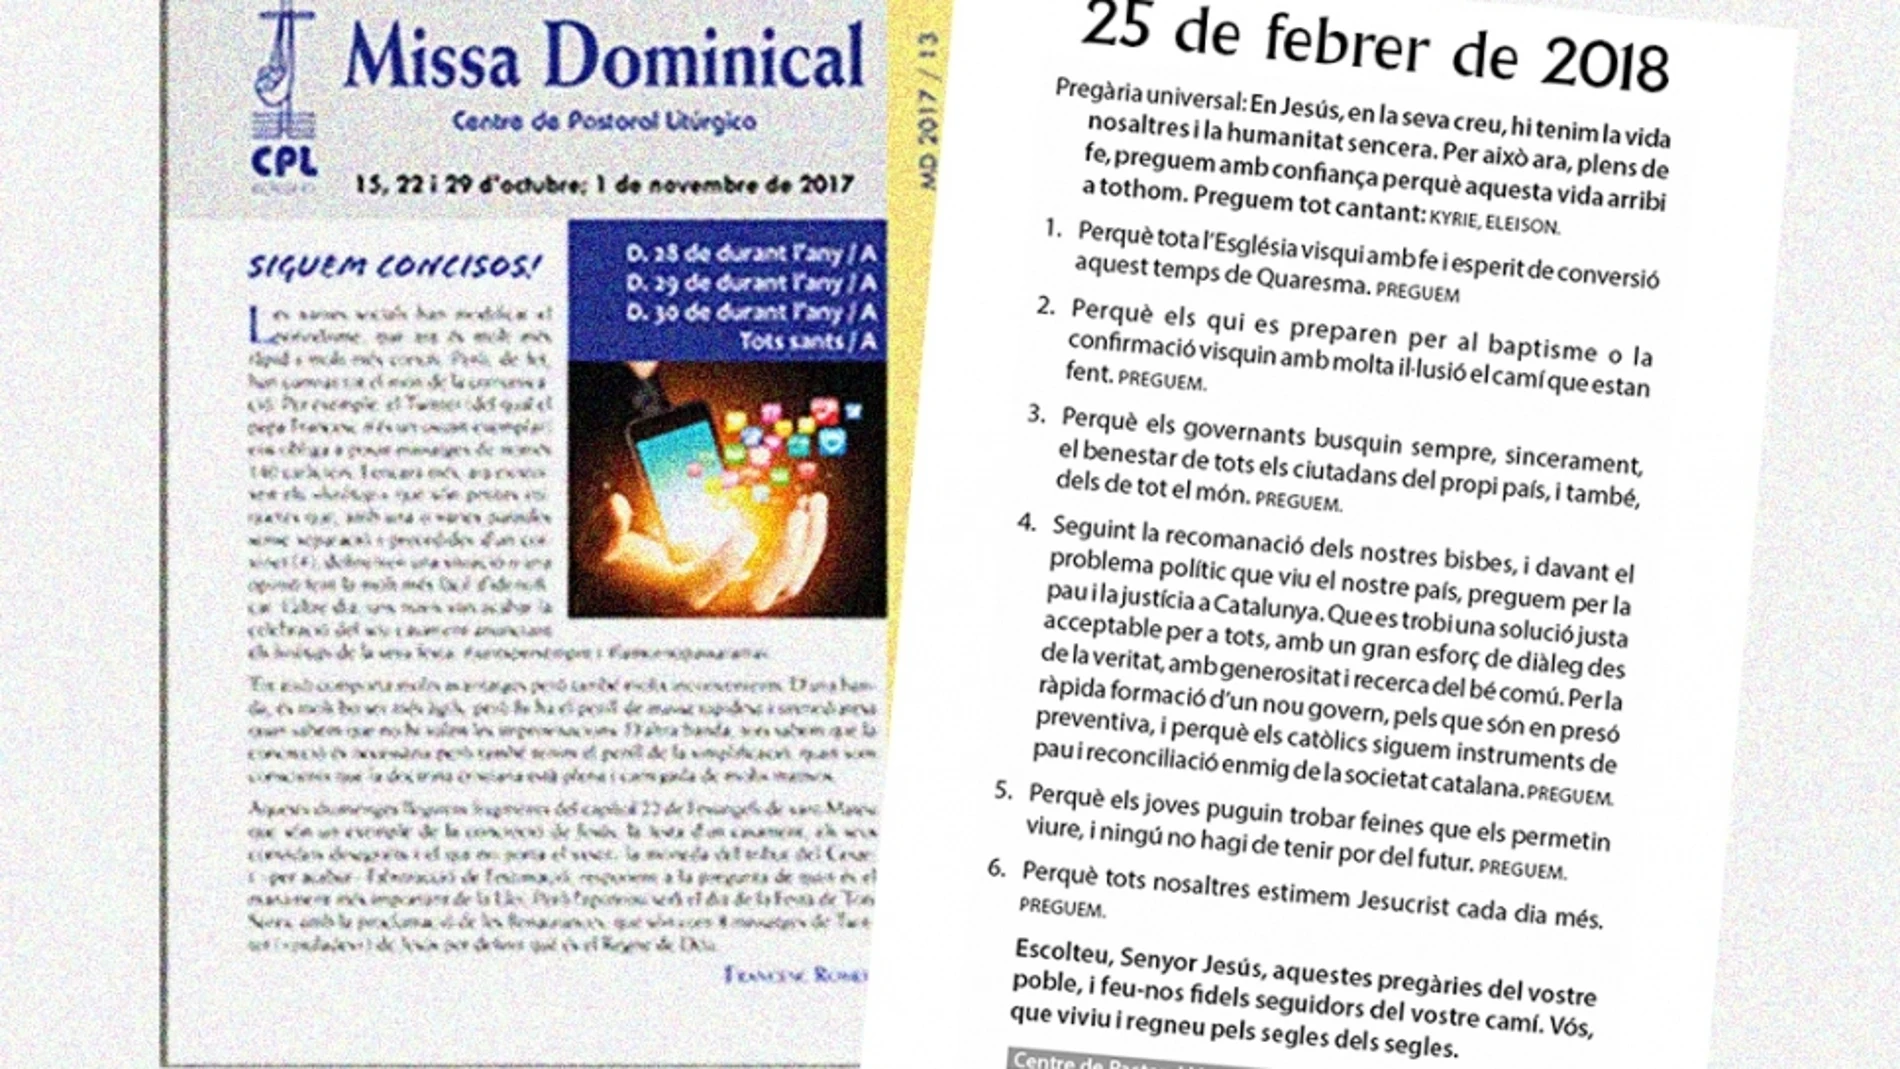 «Misa Dominical»' es uno de los materiales litúrgicos con más difusión en Cataluña y sus textos son utilizados cada semana en la mayoría de parroquias.